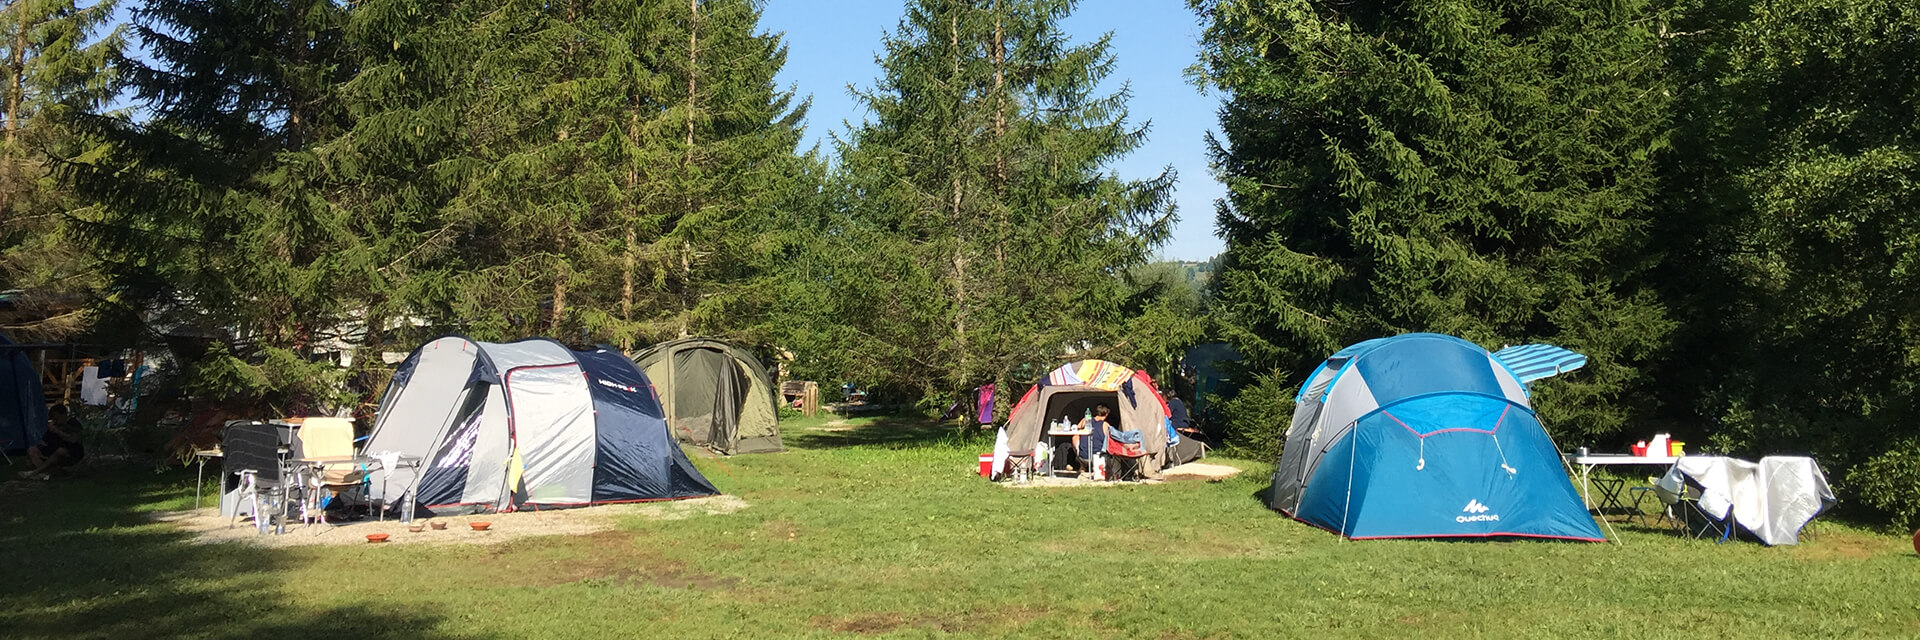 Zeltplätze des Campingplatzes le Mont Grêle in Savoyen, in einer ländlichen und grünen Umgebung